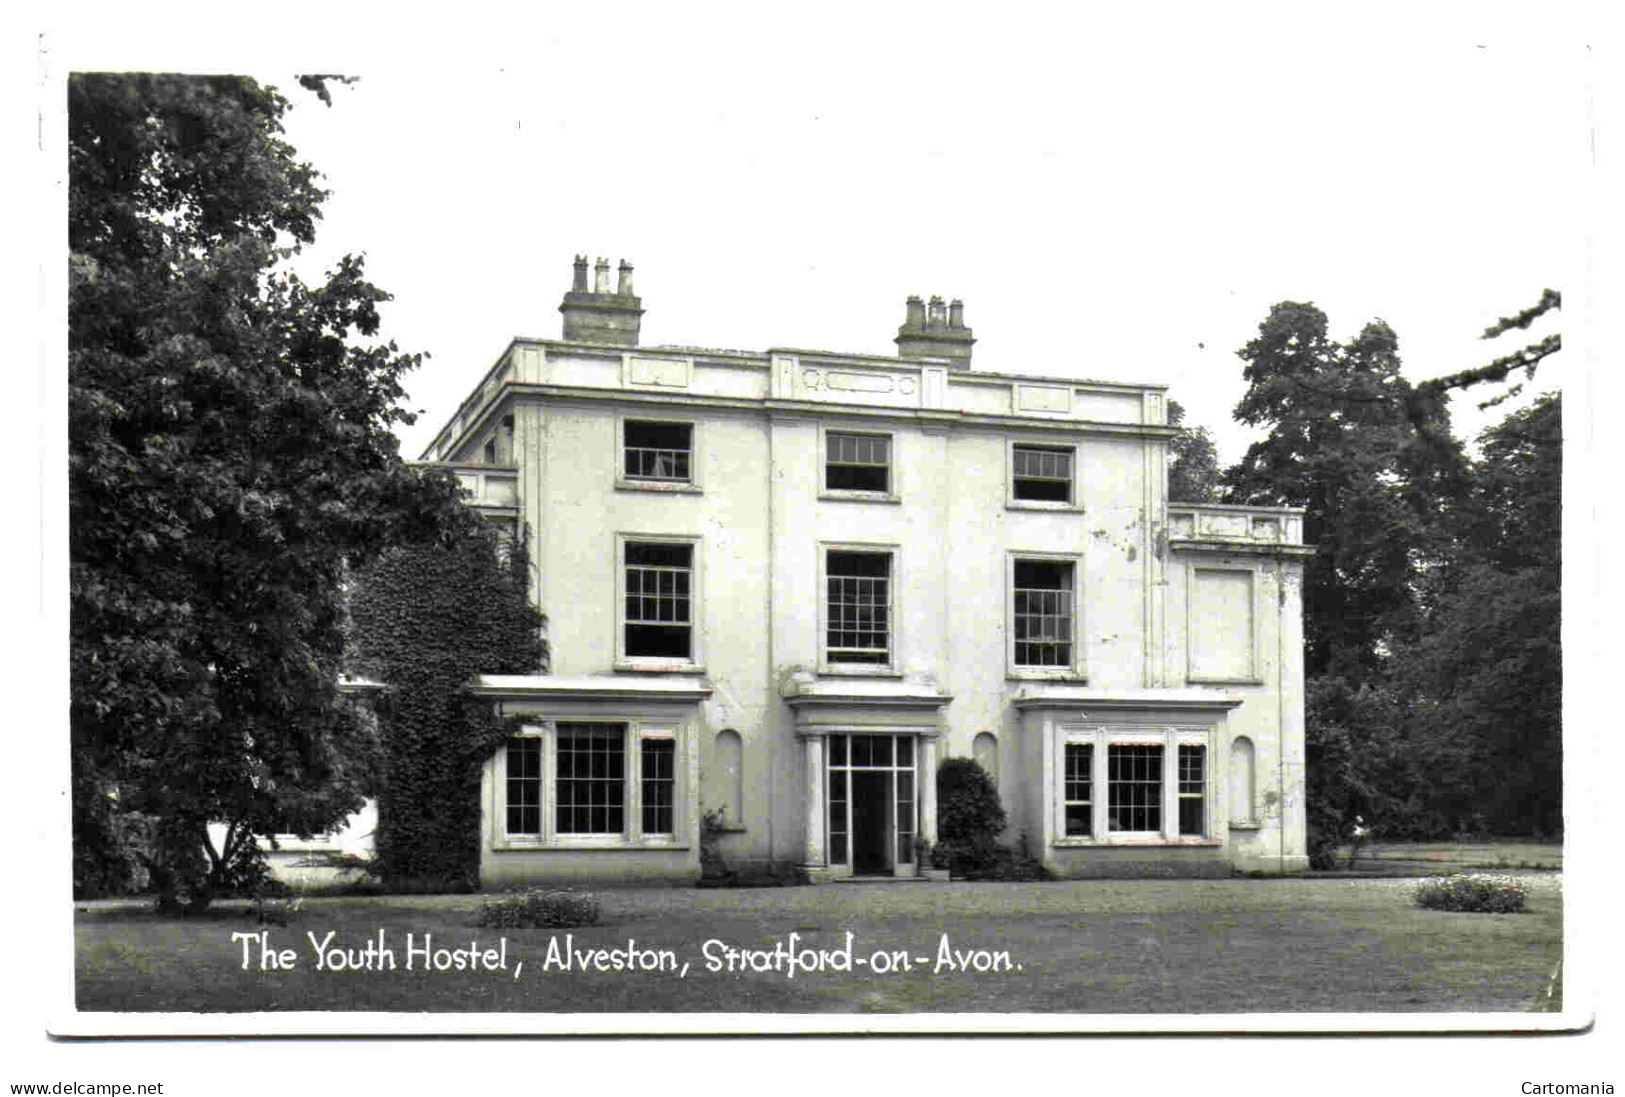 The Youth Hostel - Alveston - Stratford-on-Avon - Stratford Upon Avon